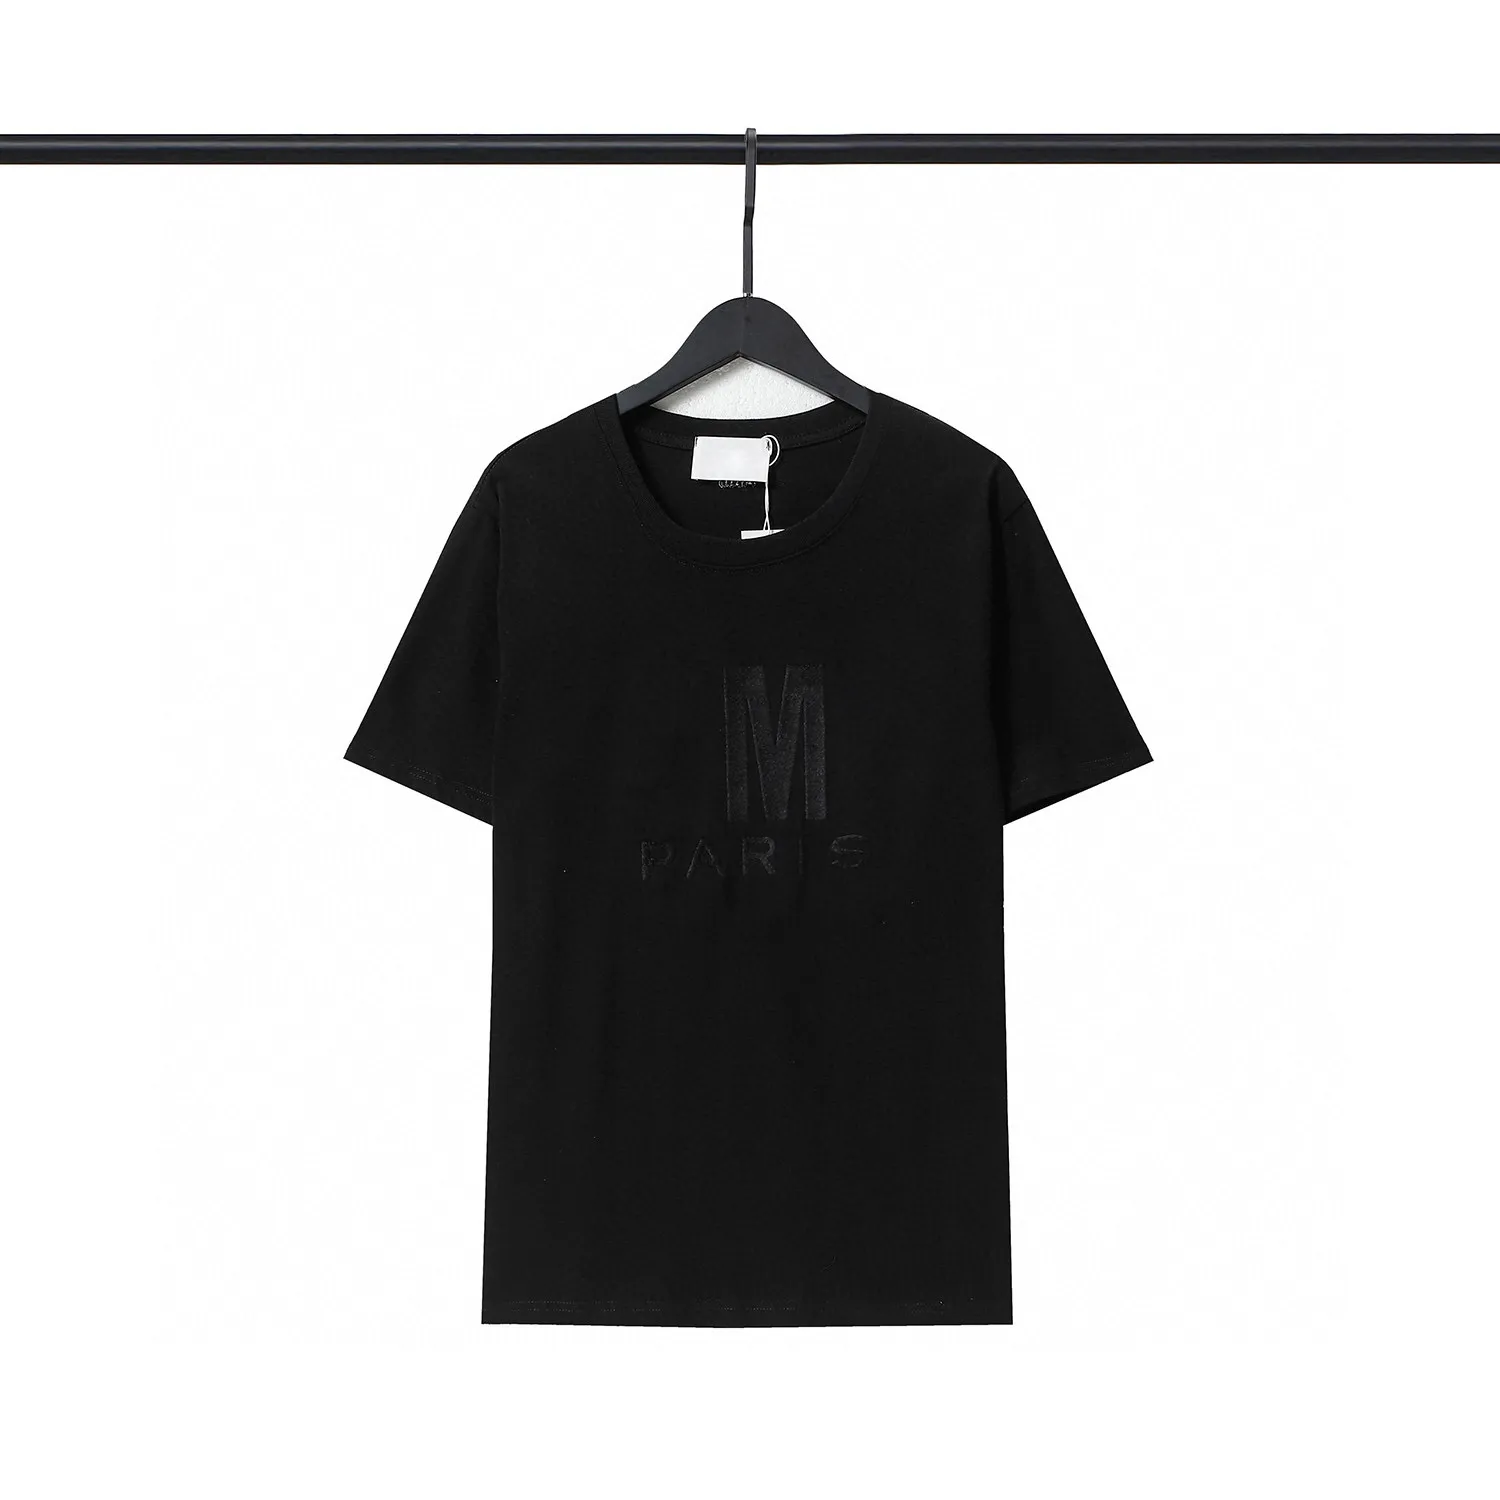 Herren Designer Kleidung Berühmte T-shirt Brief Drucken Rundhals Kurzarm Schwarz Weiß Mode Männer Frauen T-shirts S-2XL #59